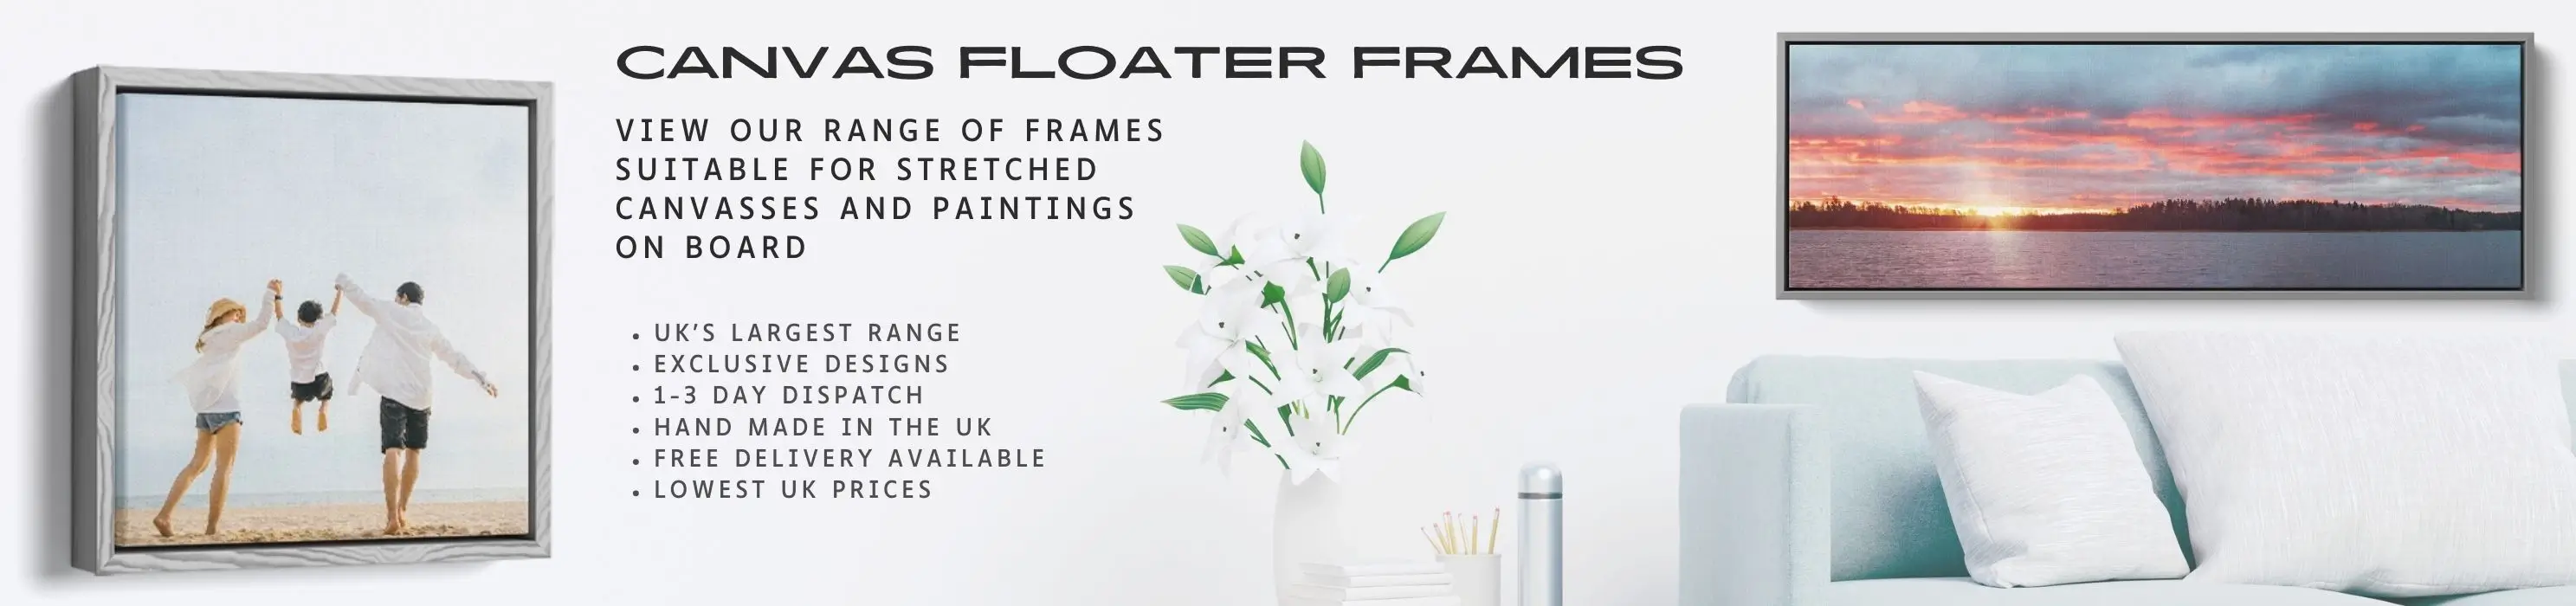 Canvas floater frame banner